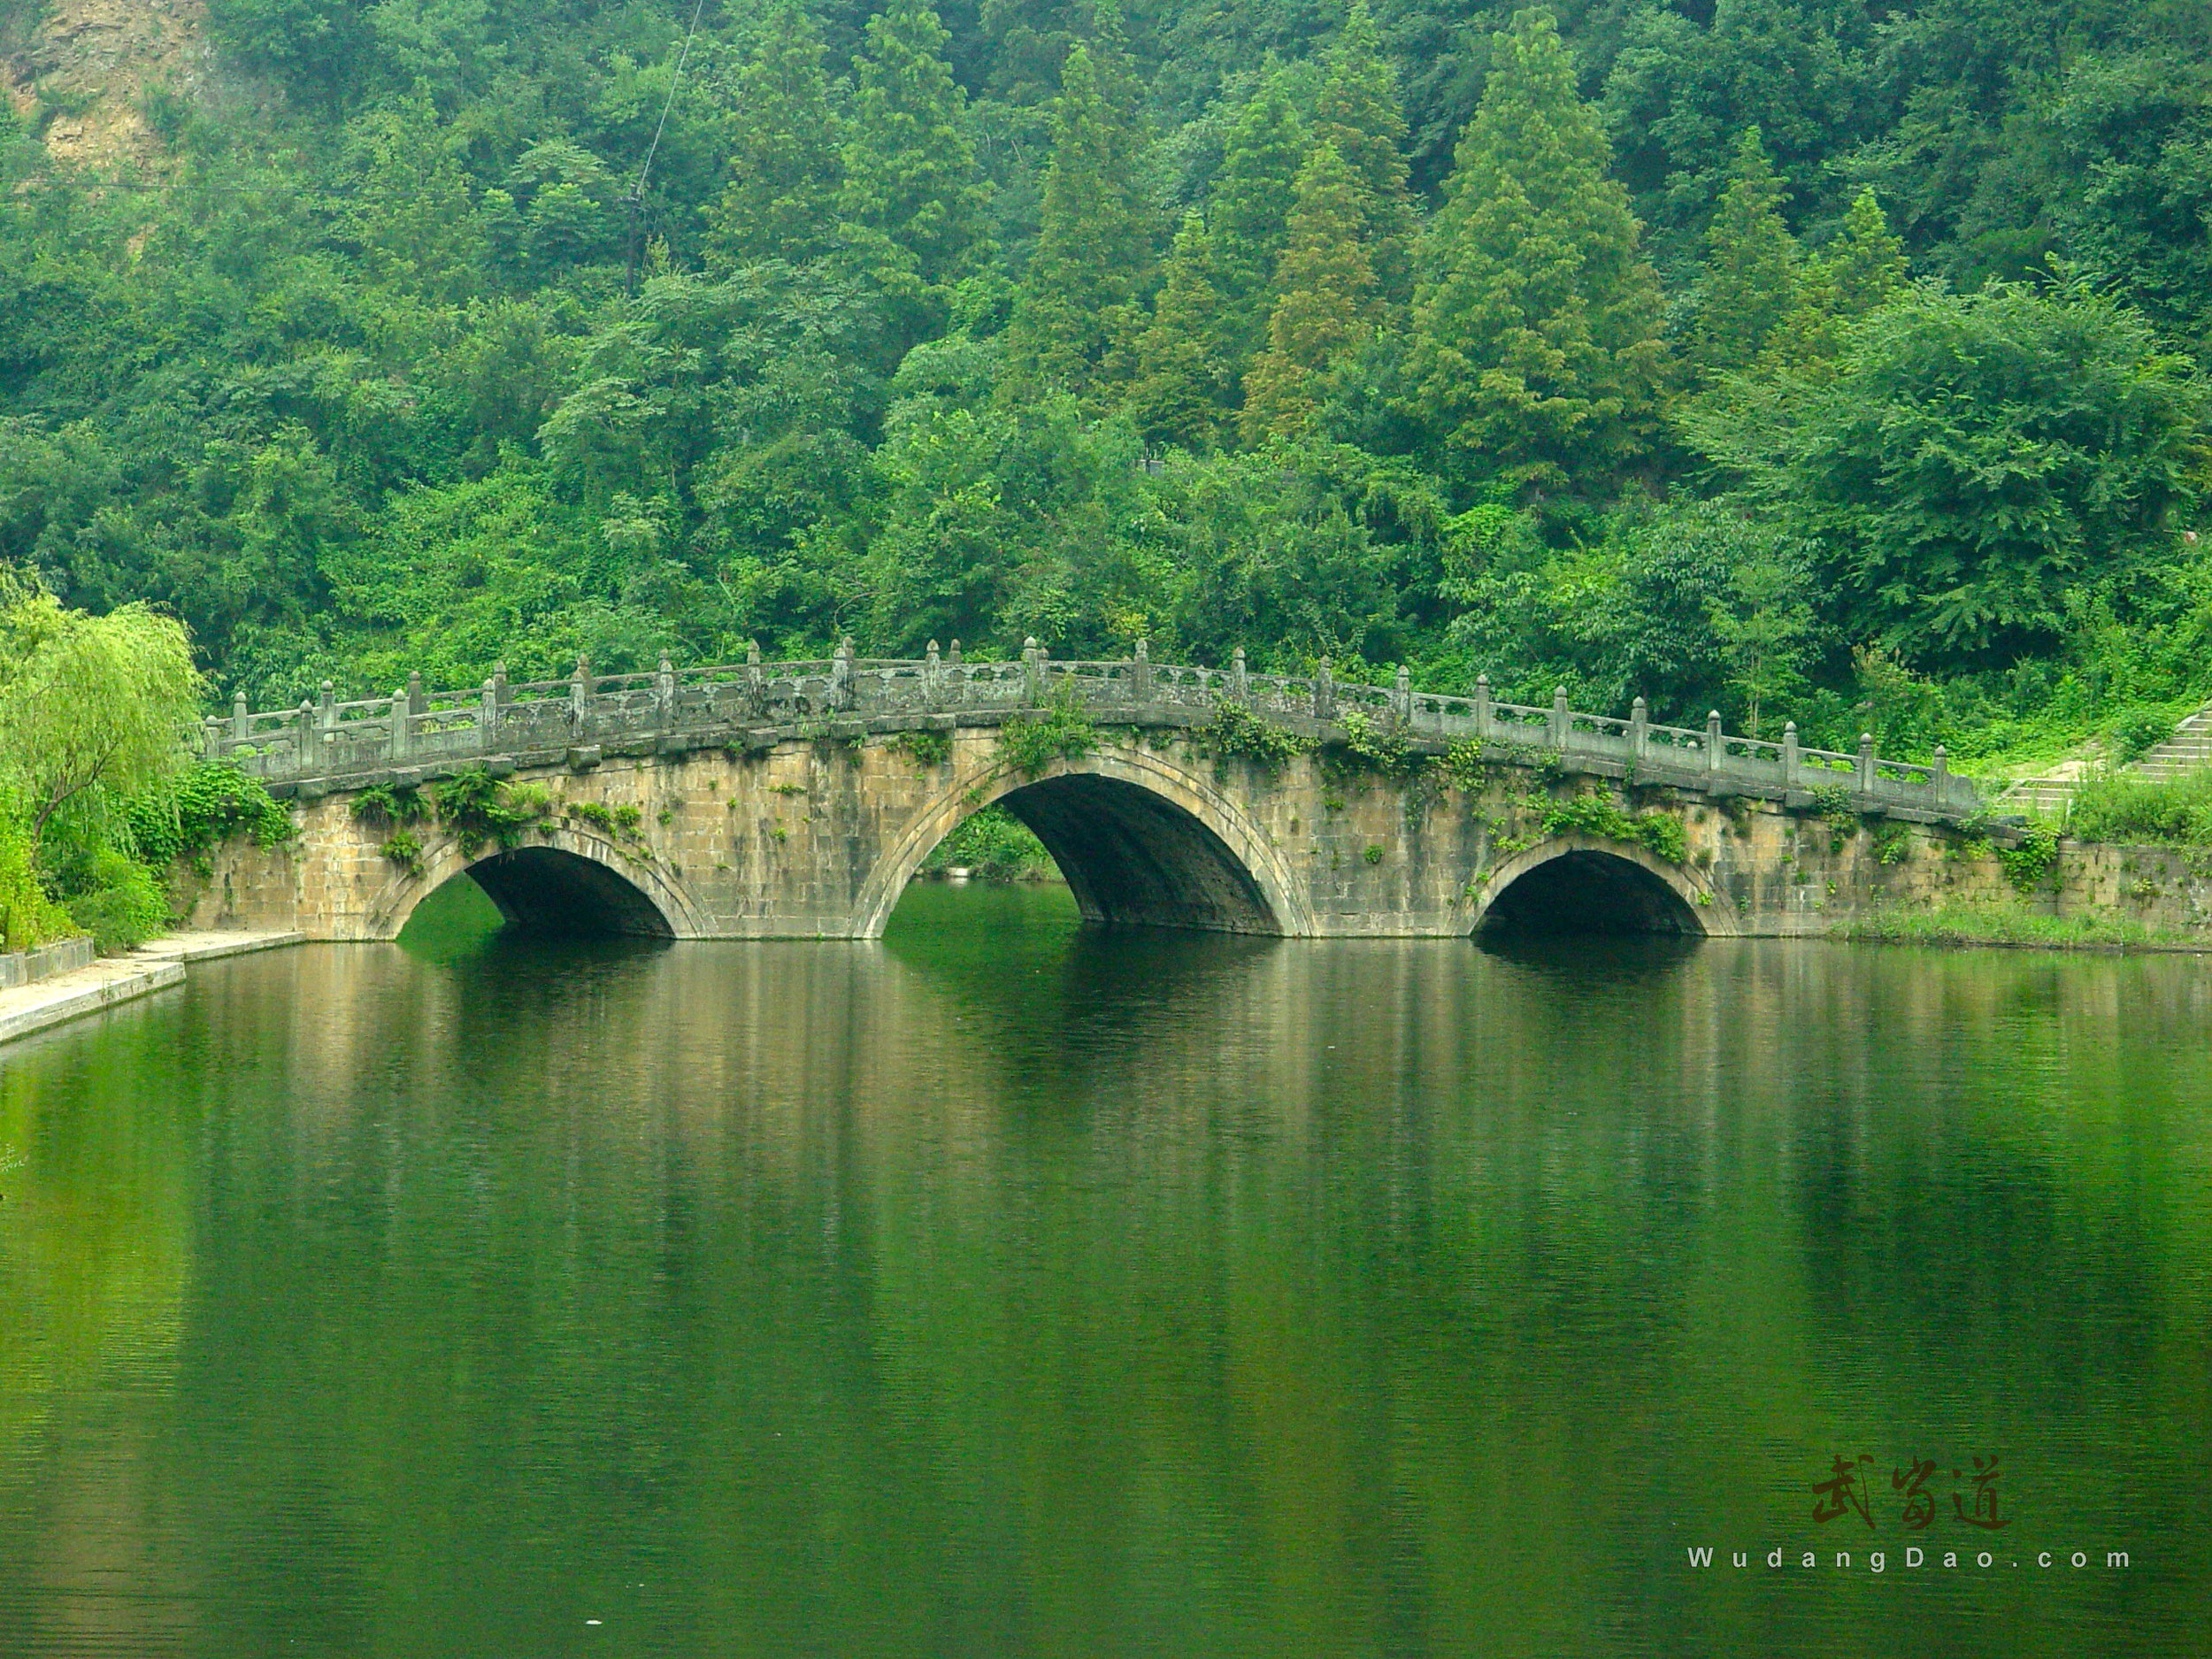 Wudang-sword-river-bridge1.jpg